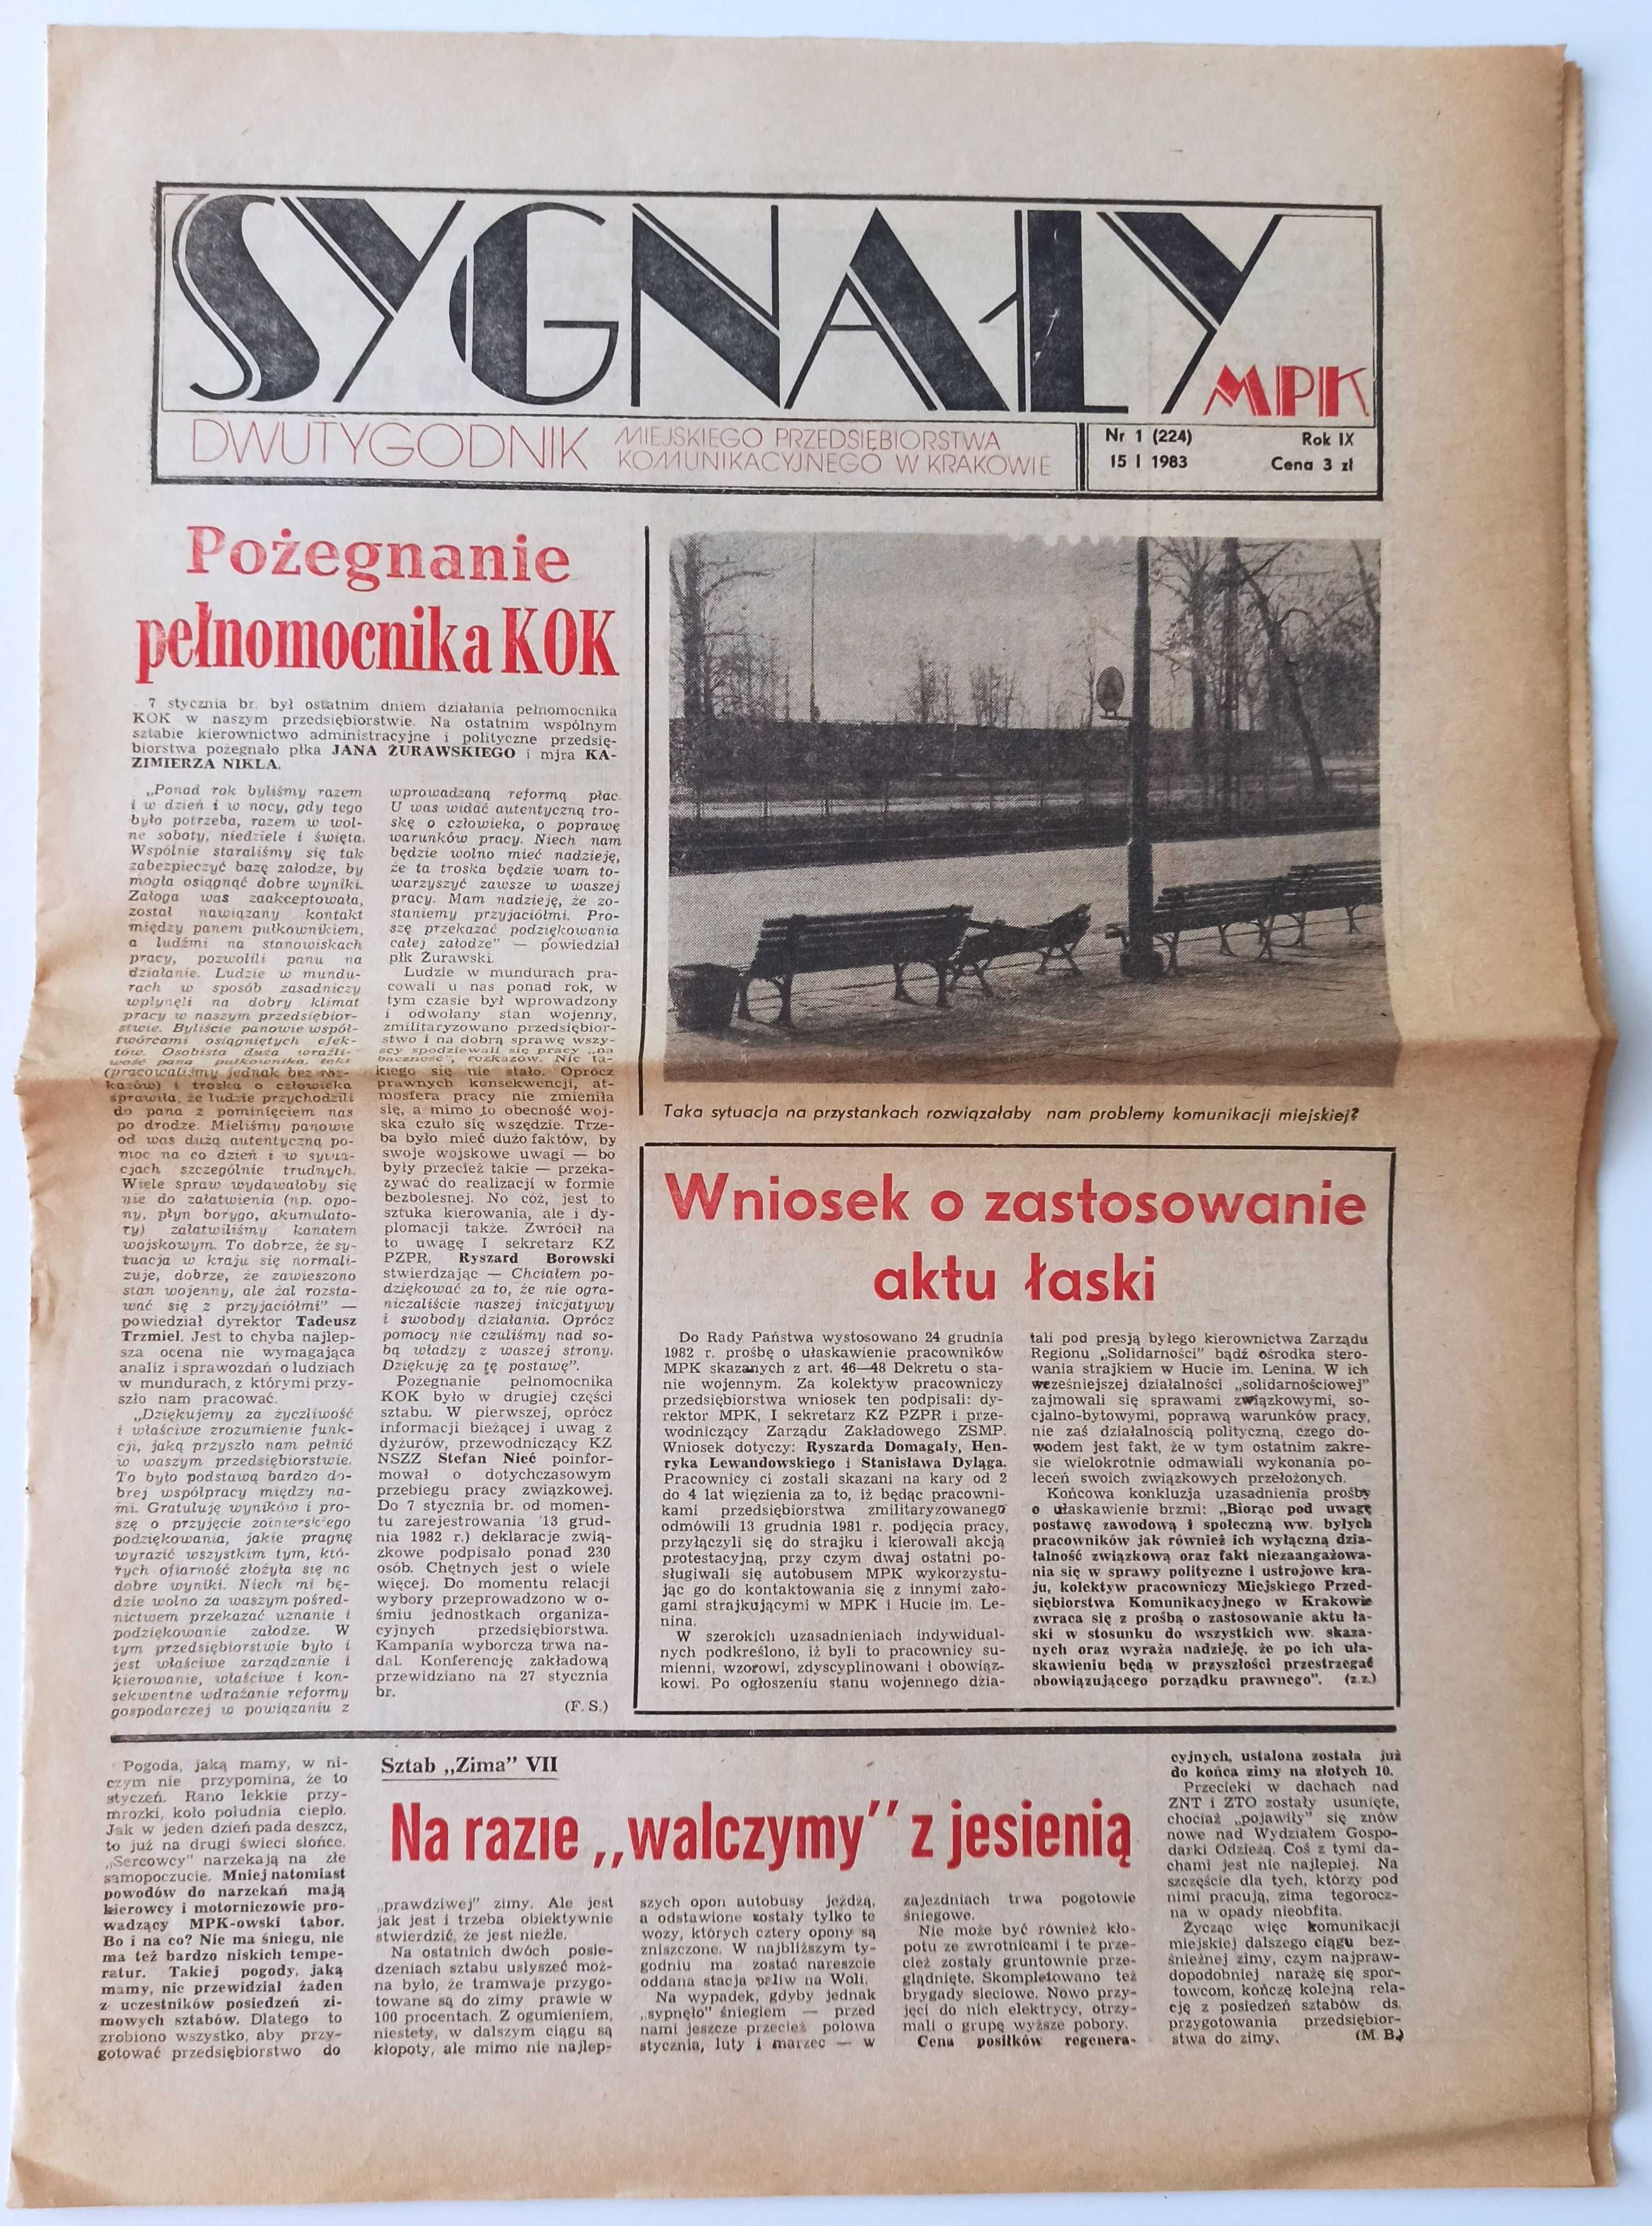 Sygnały MPK Rok IX nr 1 styczeń 1983 - miesięcznik MPK Kraków gazeta